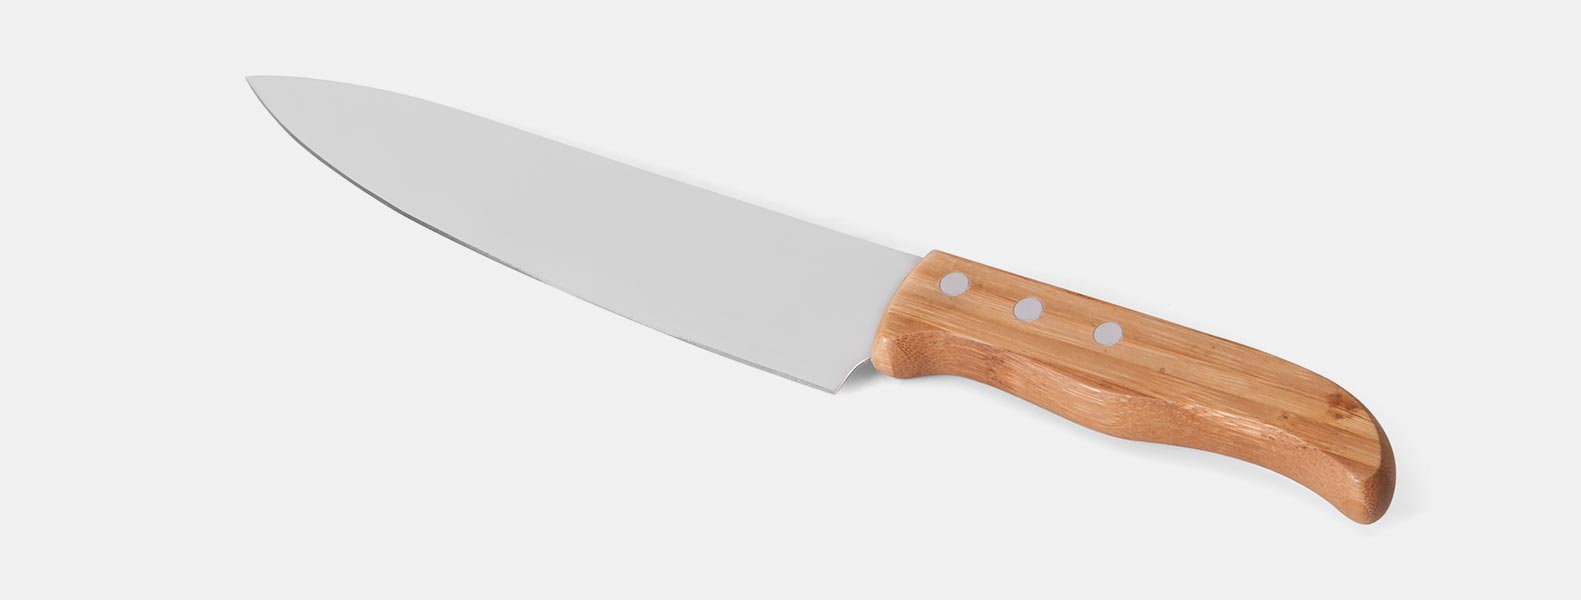 Kit composto por seis peças com cabos em bambu e lâminas em aço inox com rebites resistentes, sendo uma faca 8”, uma faca 7”, uma chaira 8”, um cutelo 6”, uma faca 5” para desossar e uma faca 4” de frutas. Estão organizados em fita elástica preta no interior de um estojo.